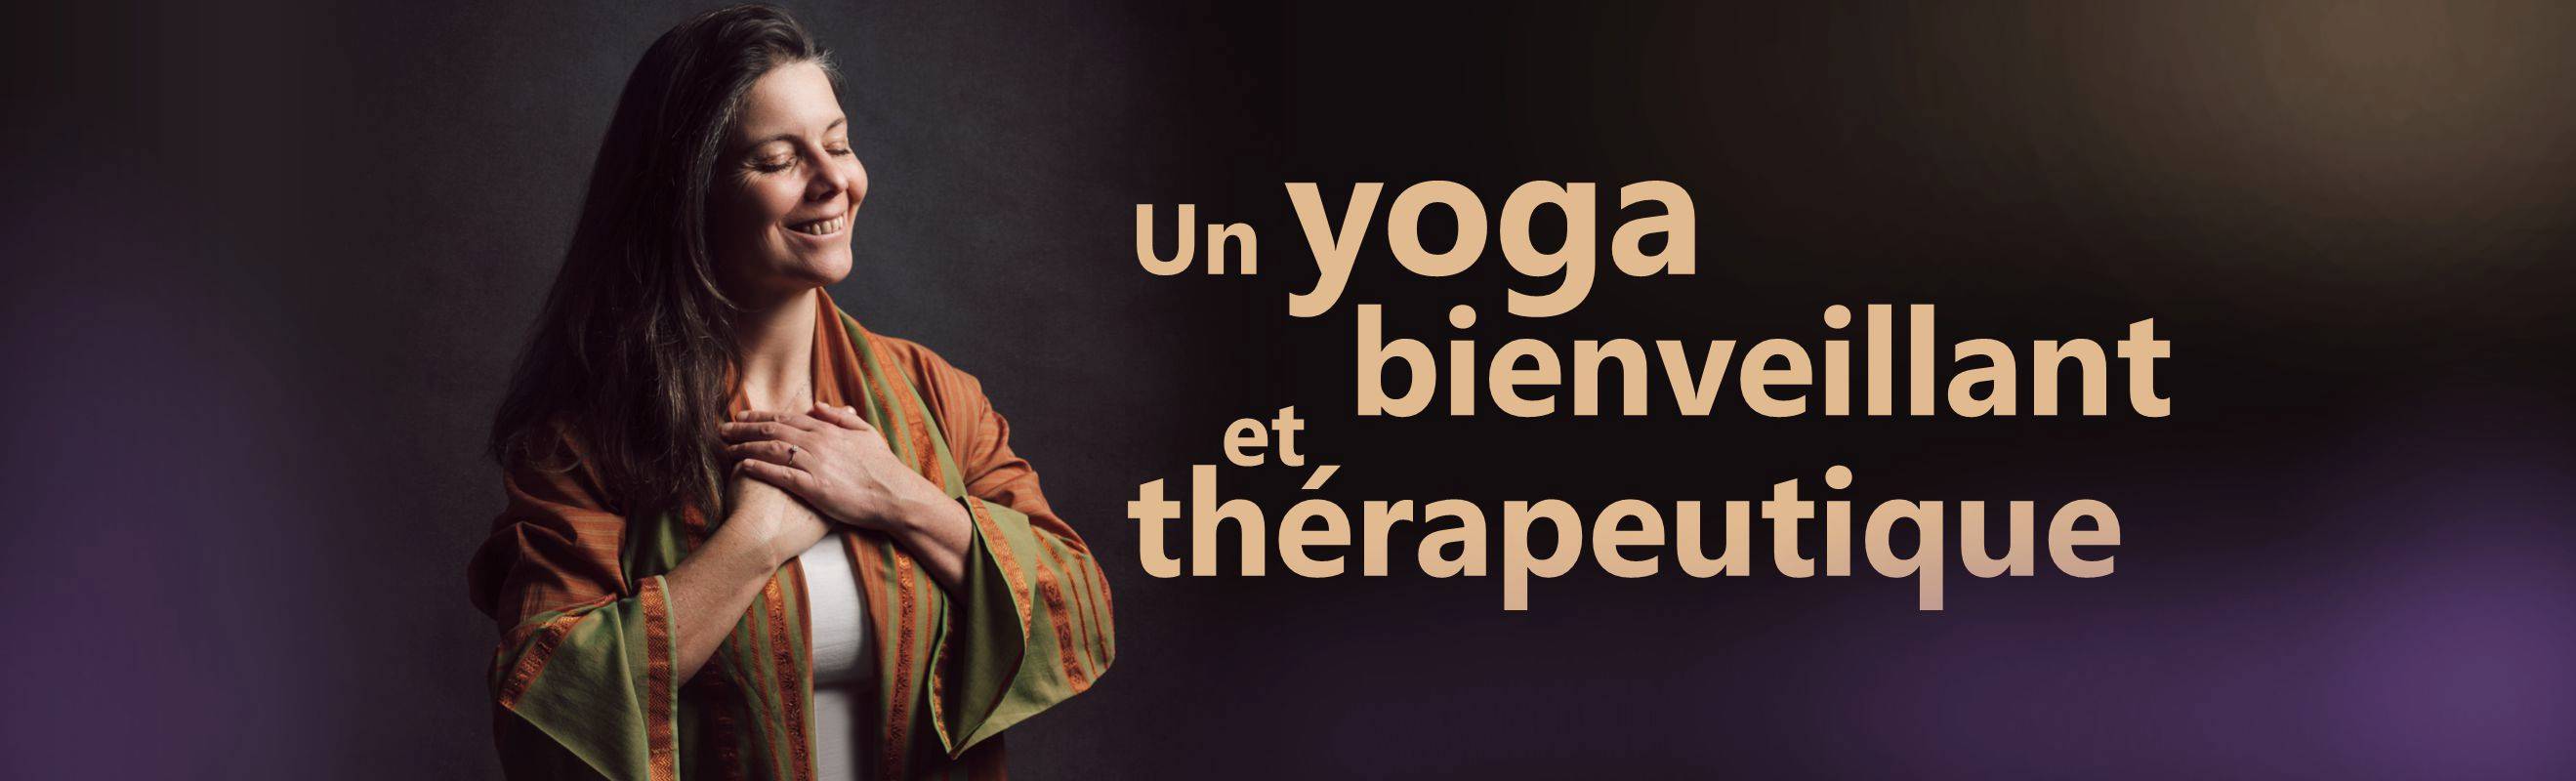 Nature Yoga Méditation (NYM) est une école de Yoga dont la professeure est Céline Reynaud. Son enseignement peut s'exercer en intérieur, en extérieur, en ligne ou lors de voyages. Elle exerce à Lille (59000).